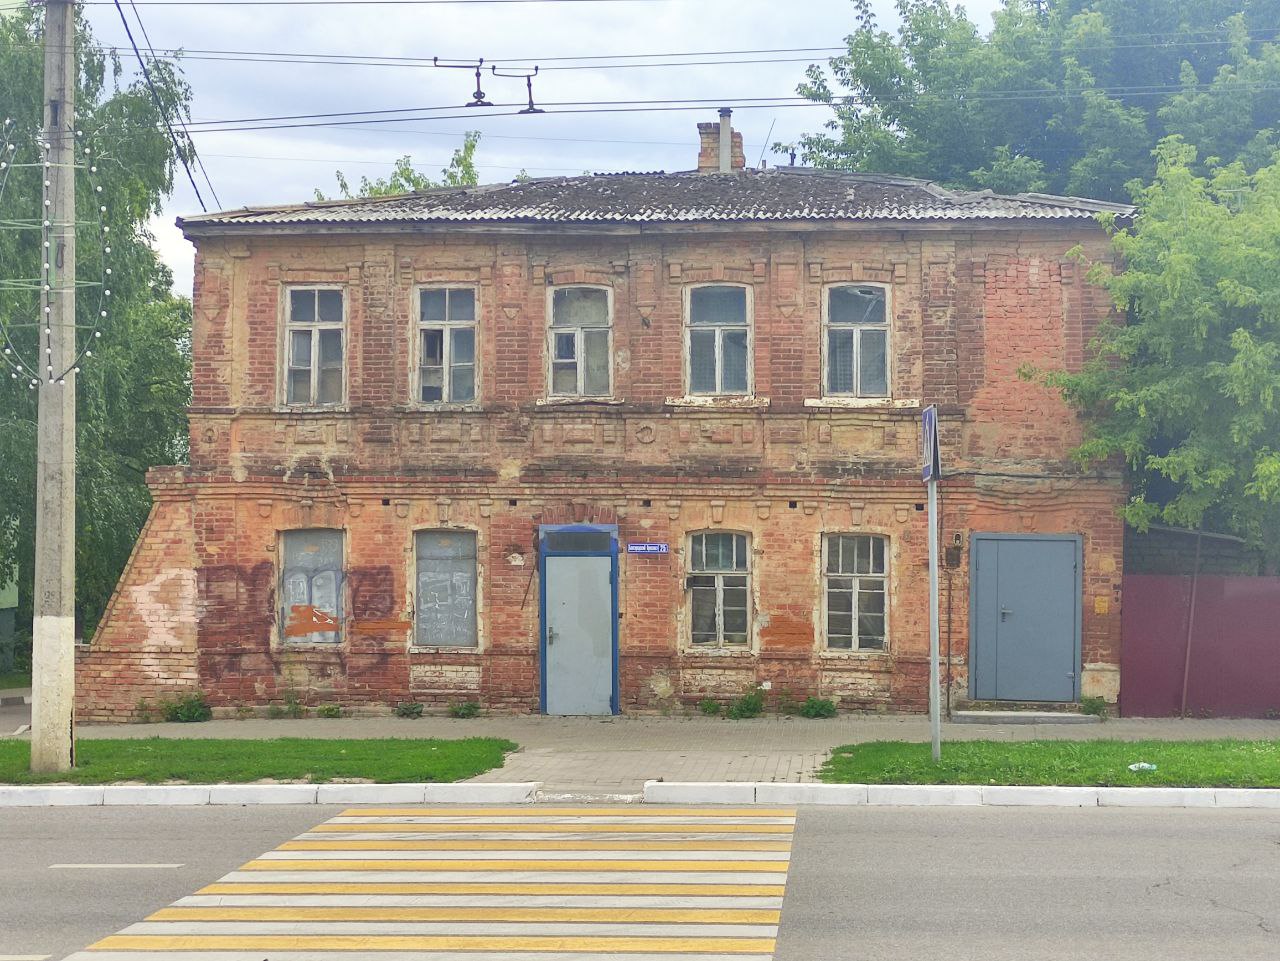 Дом в центре Белгорода, где водрузили Знамя Победы, внесли в список объектов культурного наследия